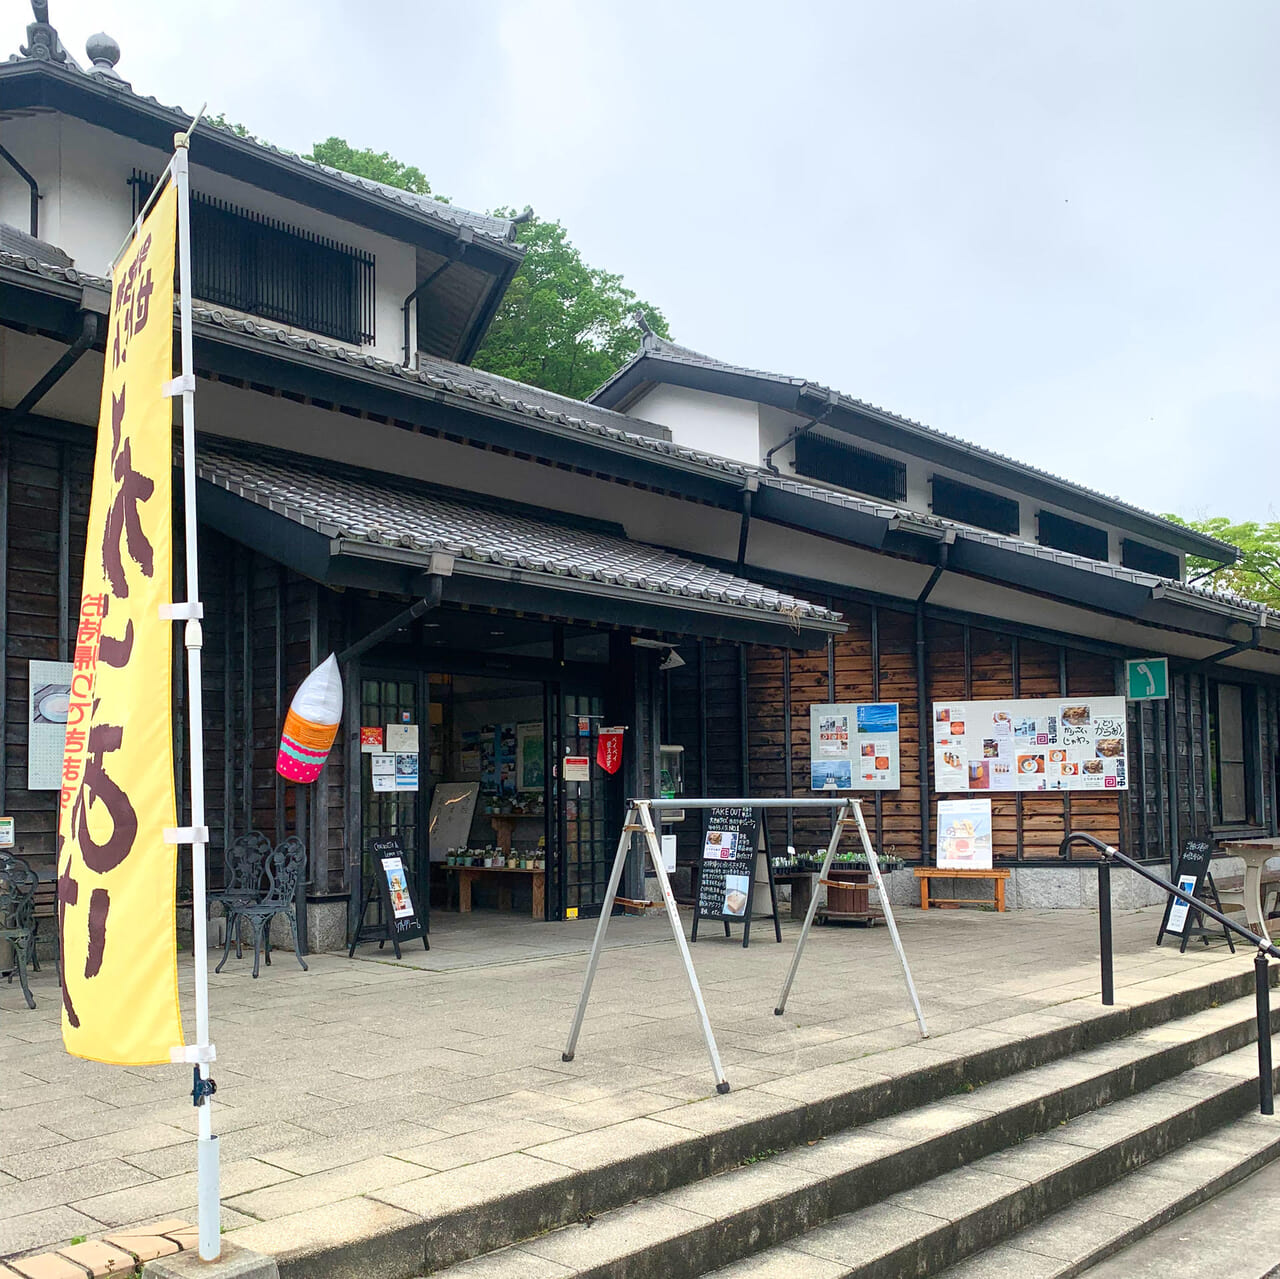 「道の駅今治 湯ノ浦温泉」は休憩にもお土産の購入にもおすすめのスポットです!!